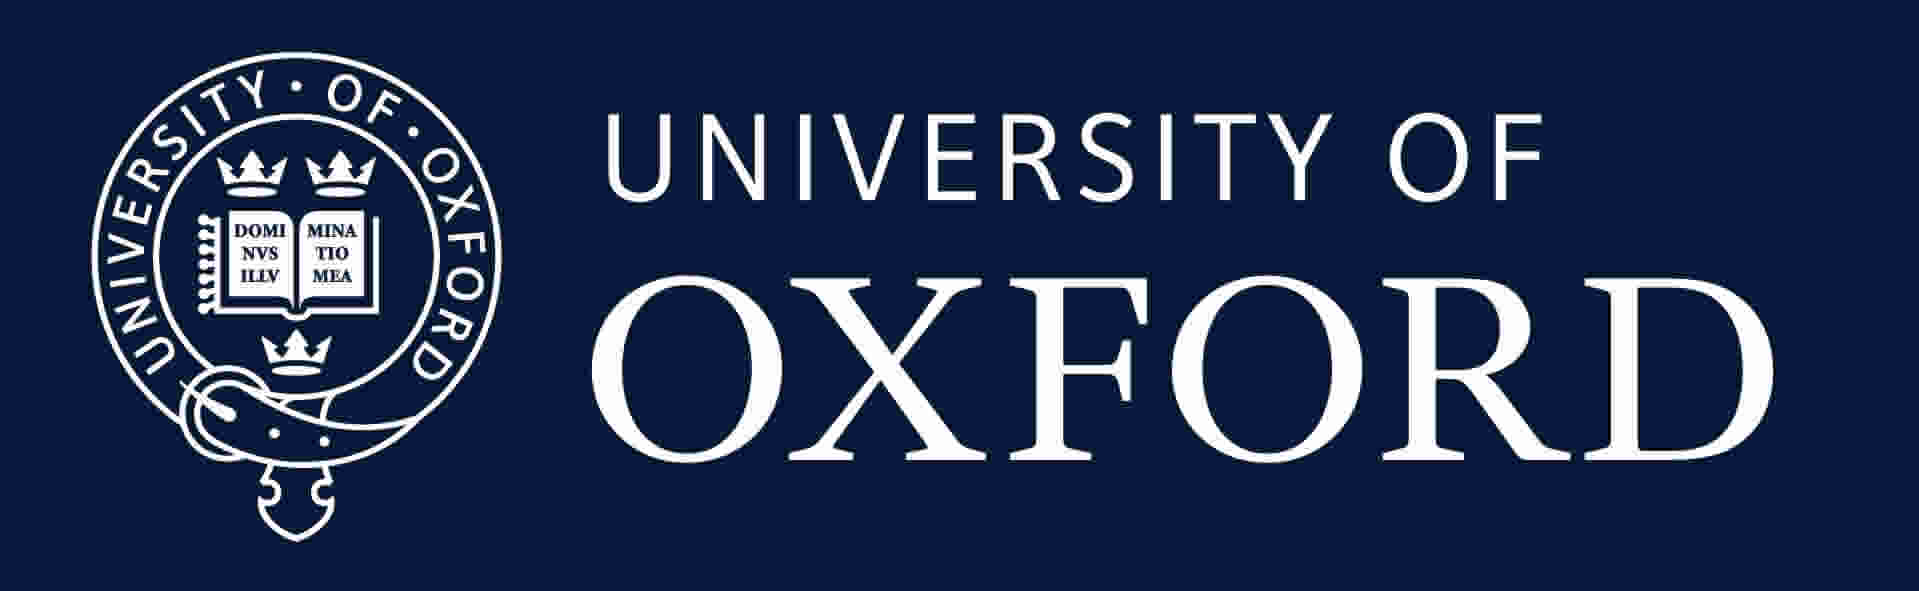 logo of the University of Ocford